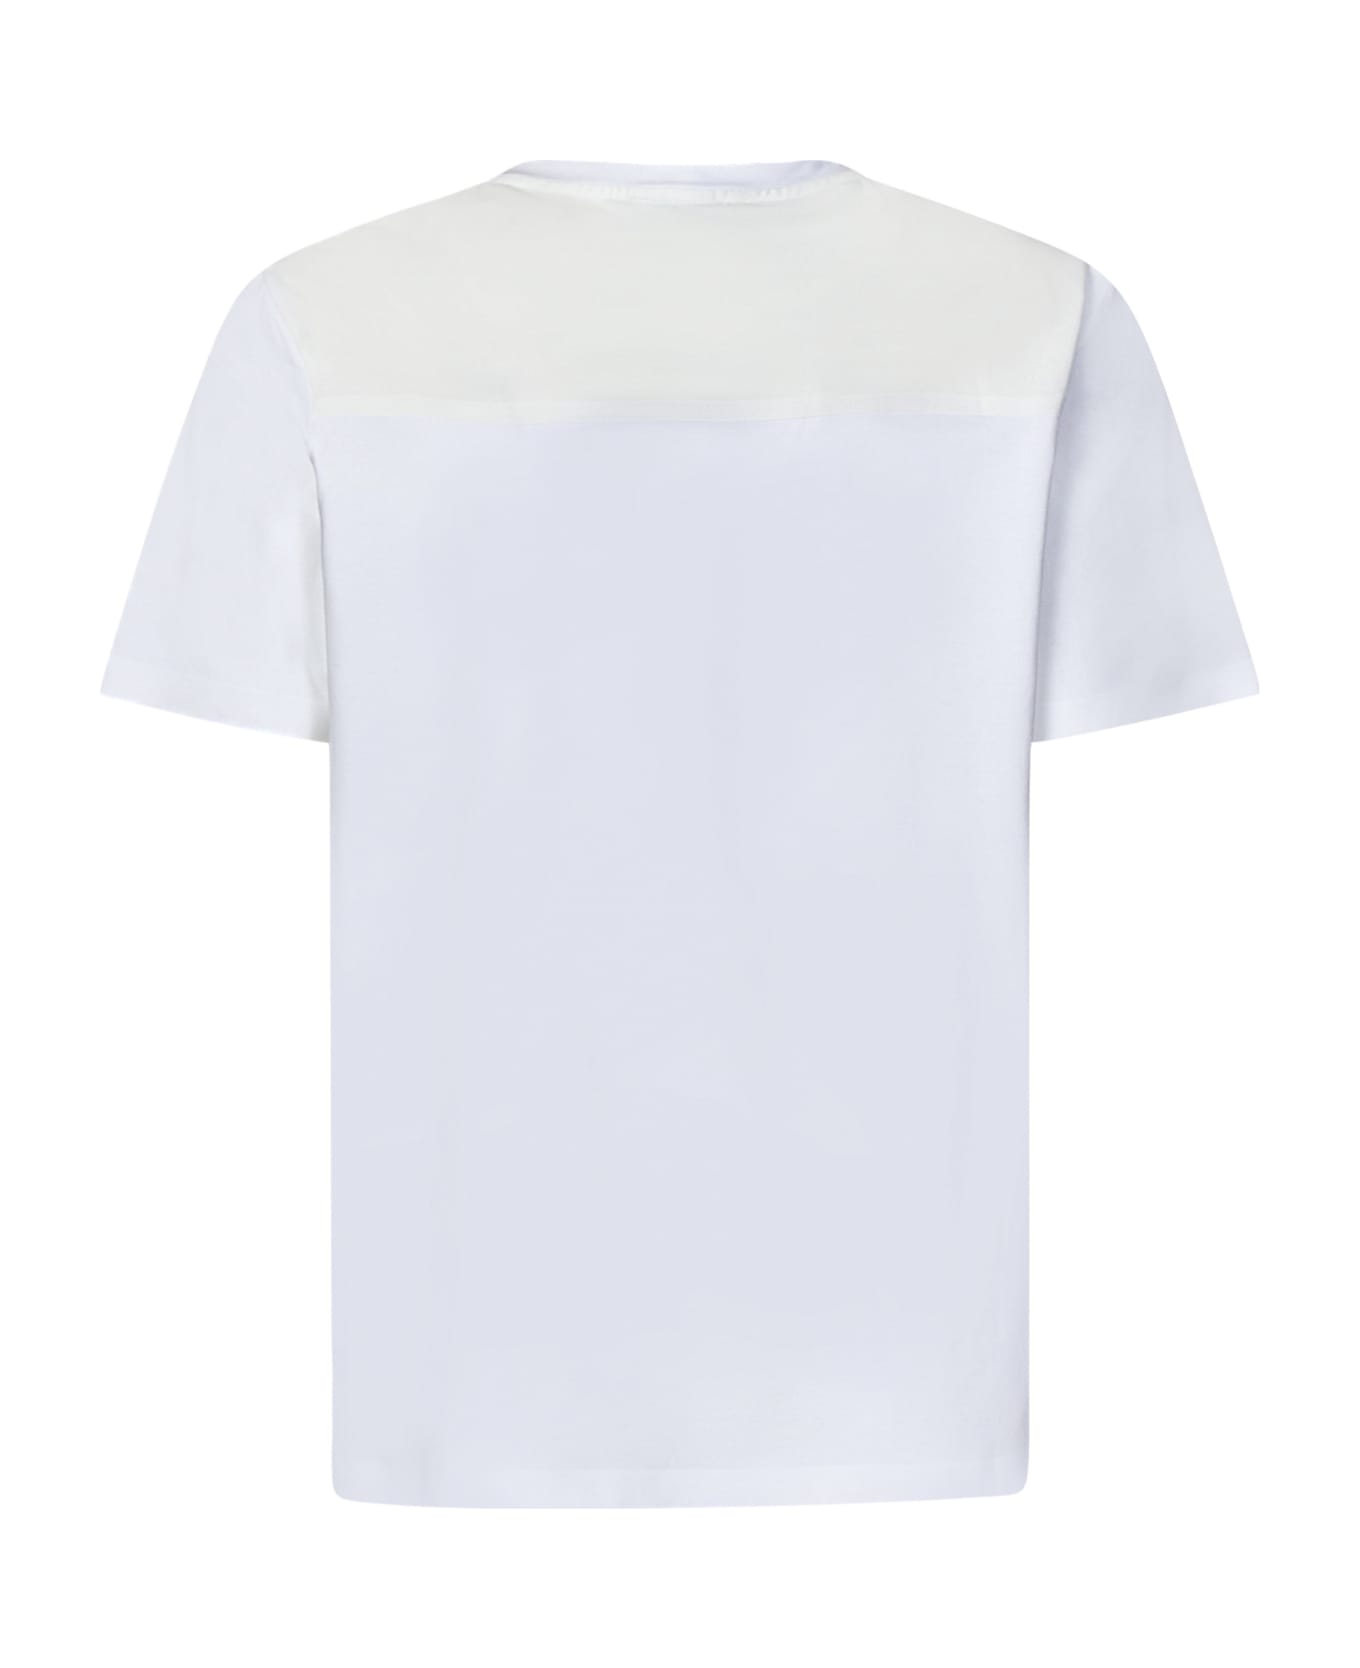 Herno T-shirt - WHITE